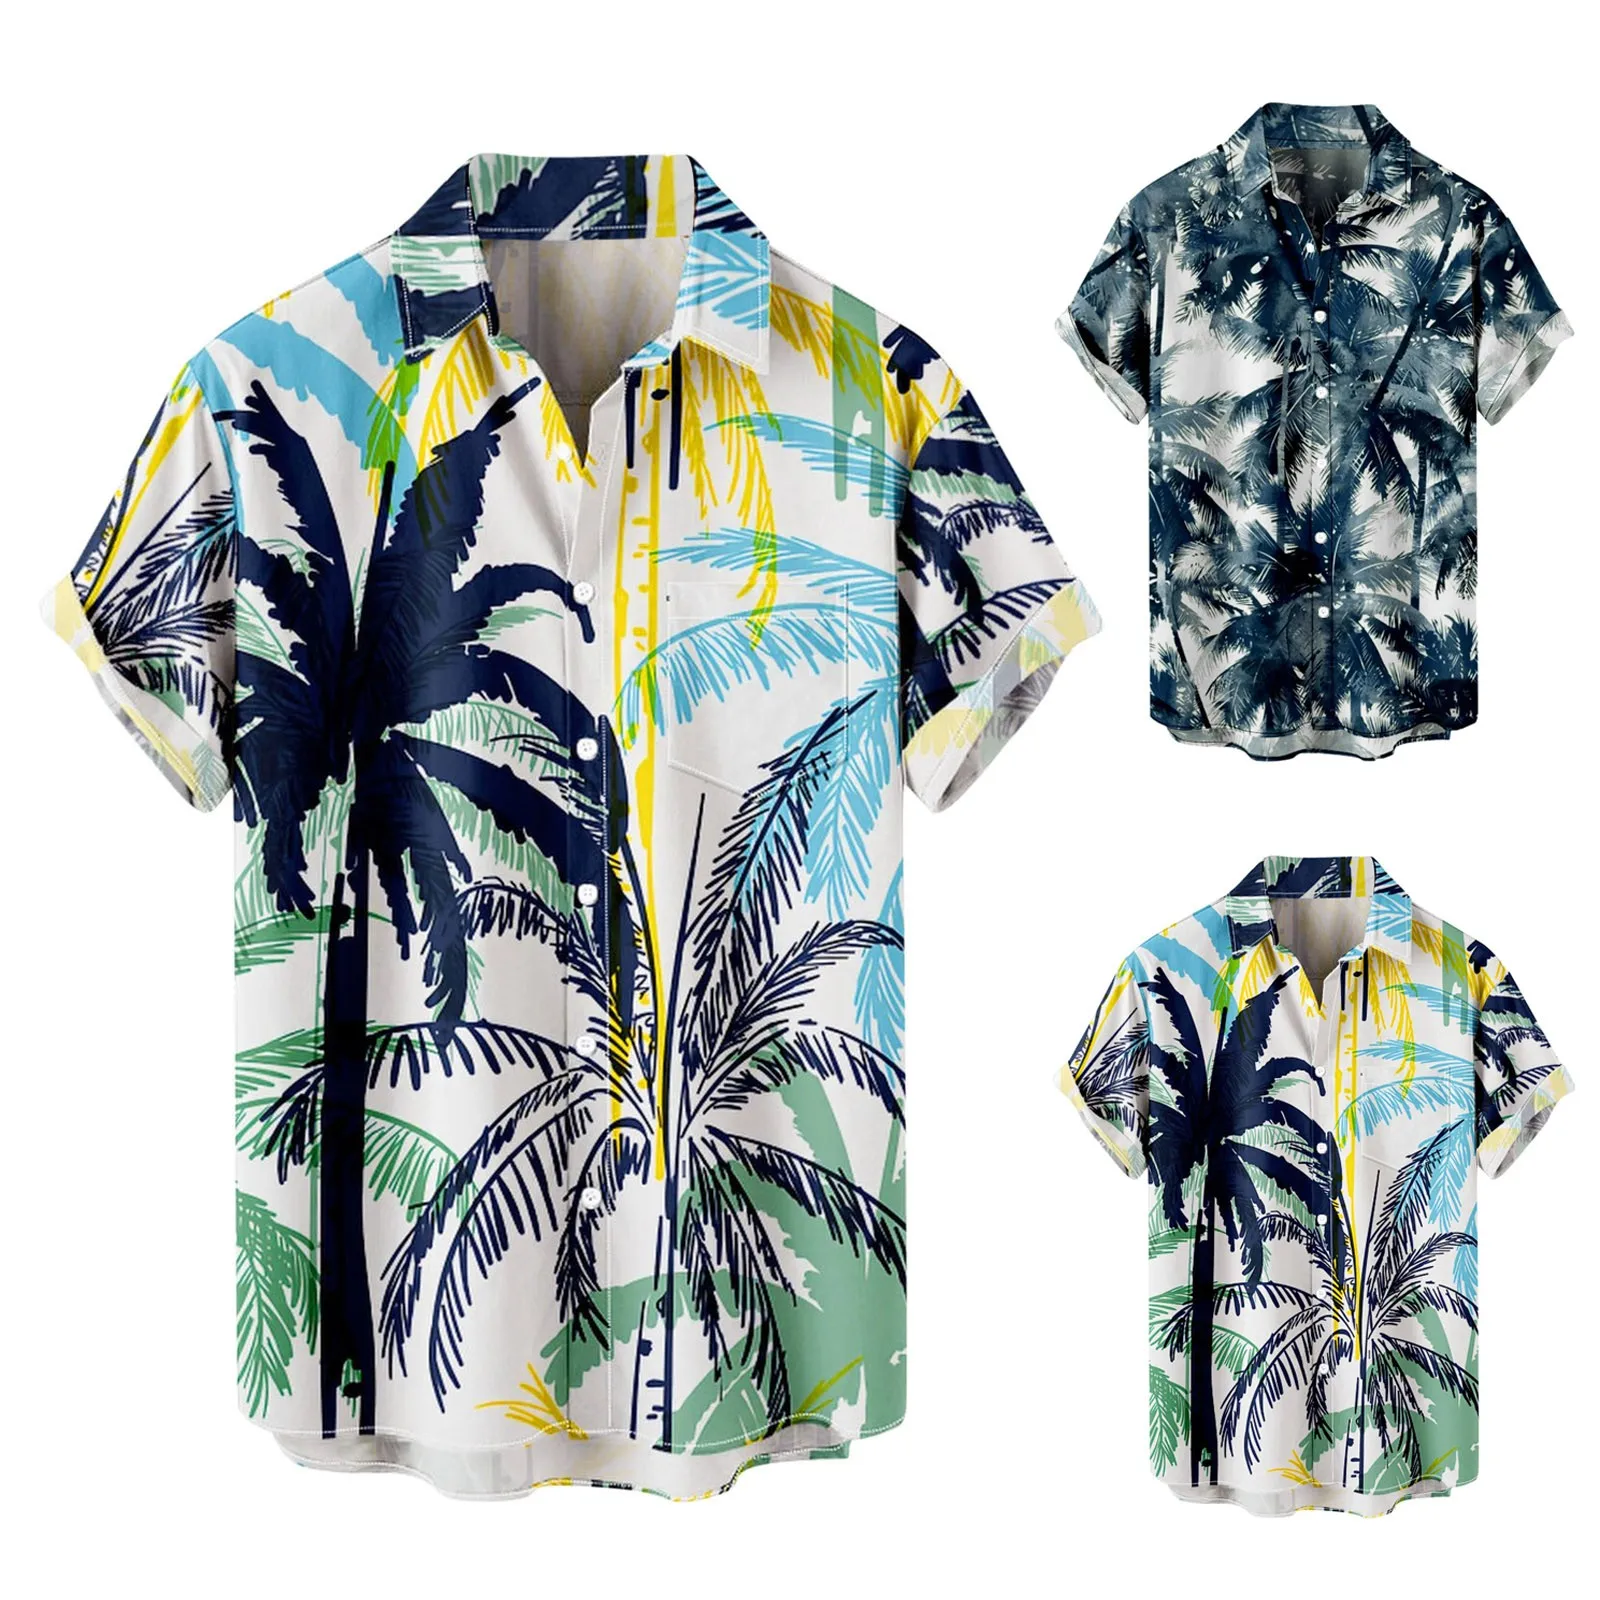 

Пляжная рубашка с принтом кокосового дерева гавайская рубашка с коротким рукавом отложным воротником хлопковая льняная блузка на пуговицах пляжный повседневный мужской кардиган